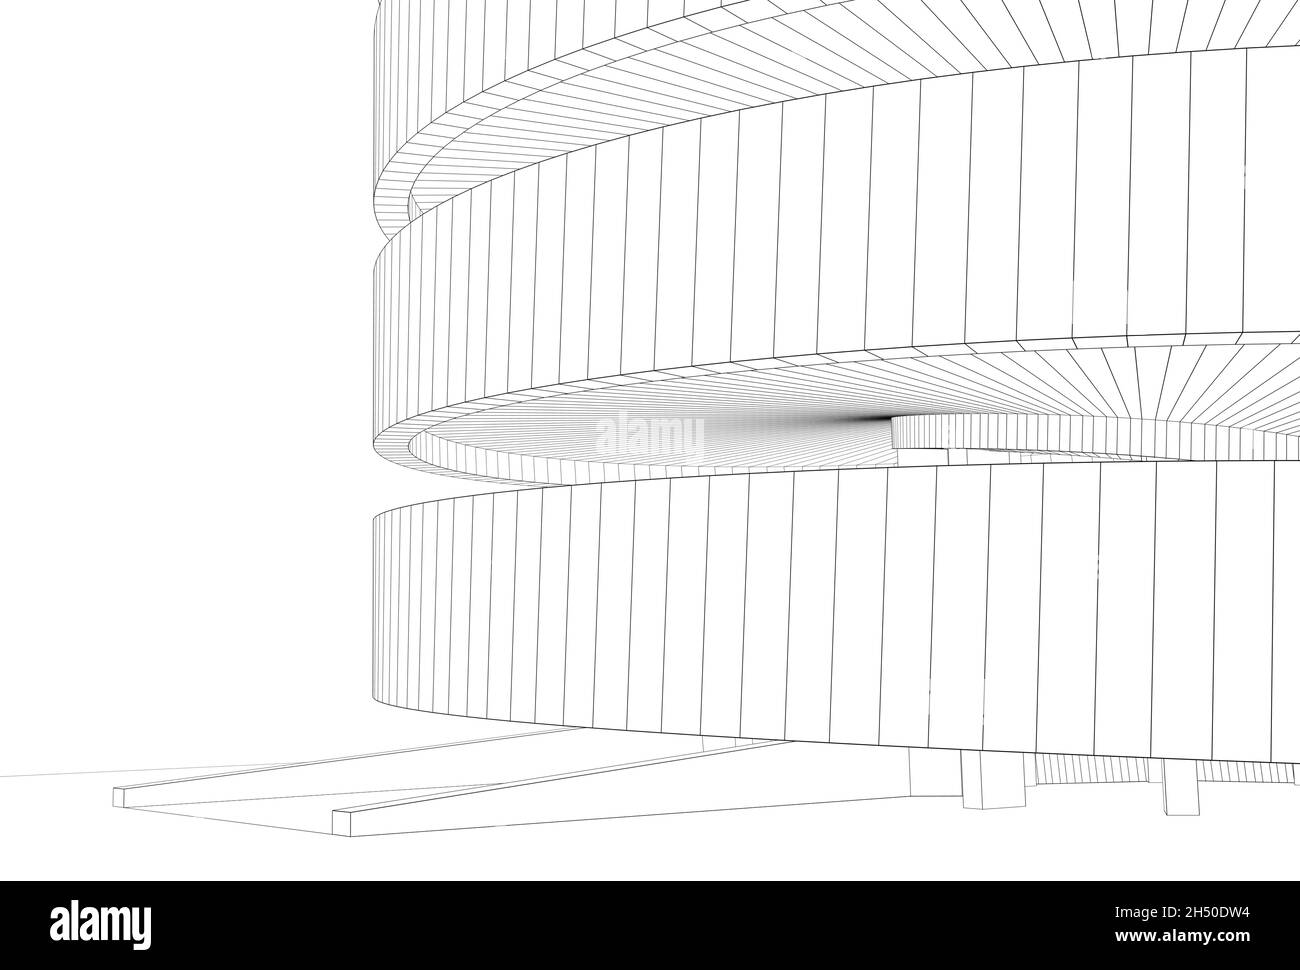 Umreißen des Drahtrahmens eines runden Turms, isoliert auf weißem Hintergrund, 3d-Darstellung Stockfoto